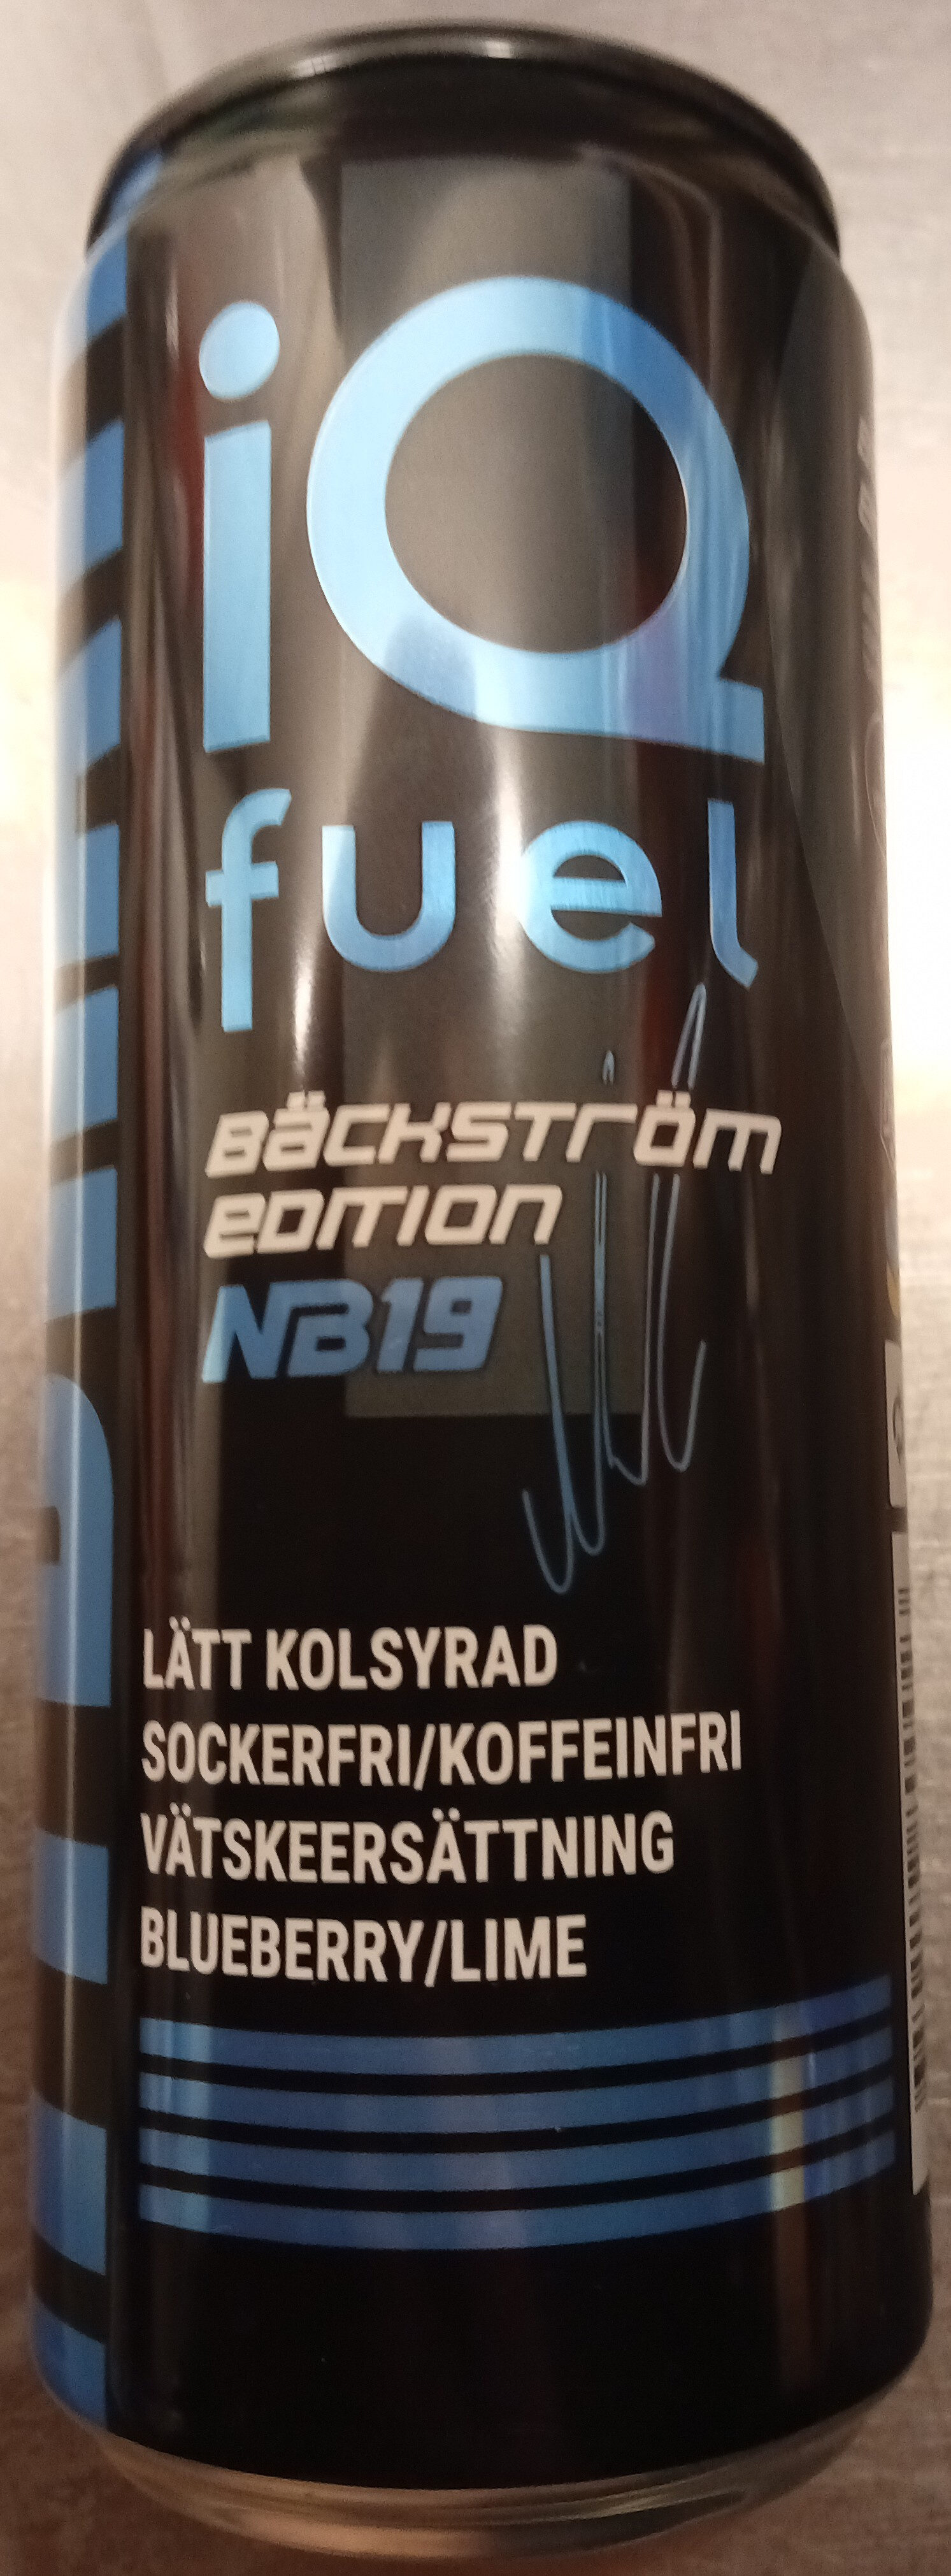 iQ Fuel Hydrate Blueberry/Lime Bäckström Edition NB19 - Produit - sv